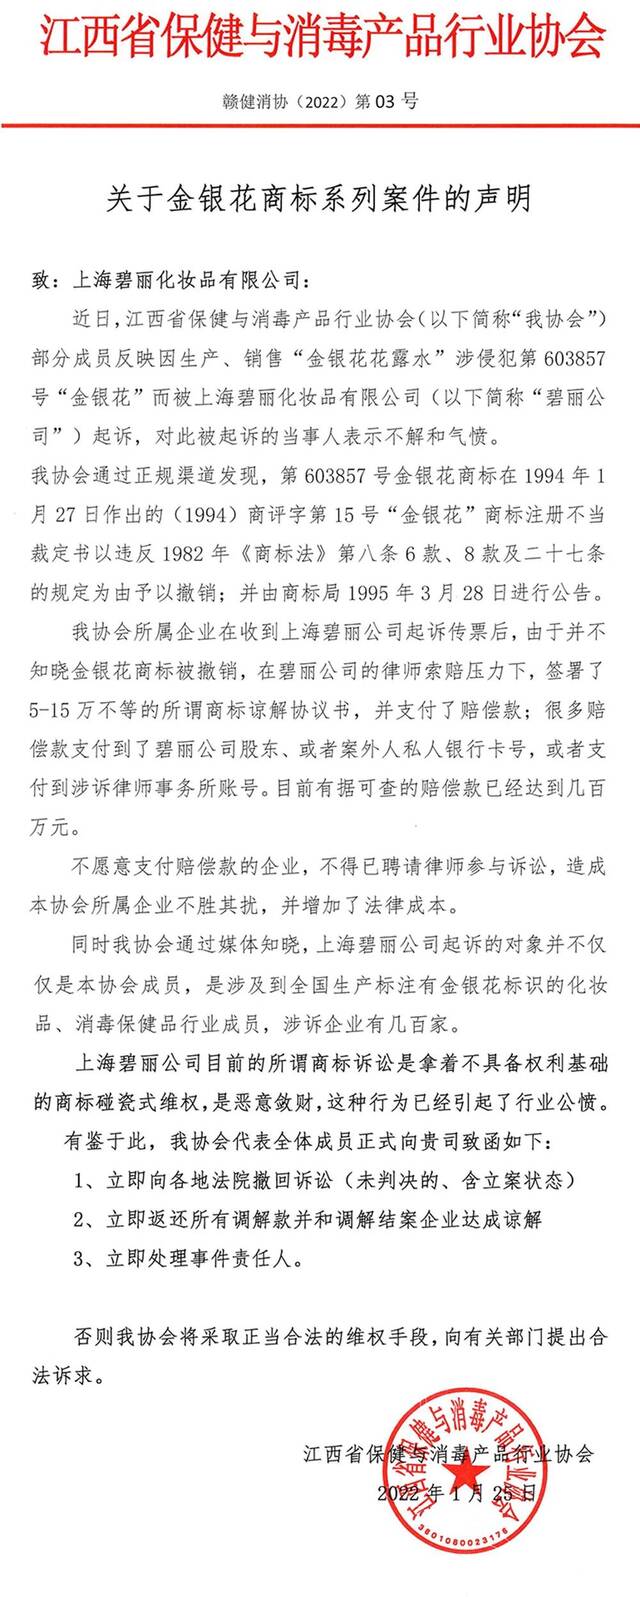 江西省保健与消毒产品行业协会发布的声明